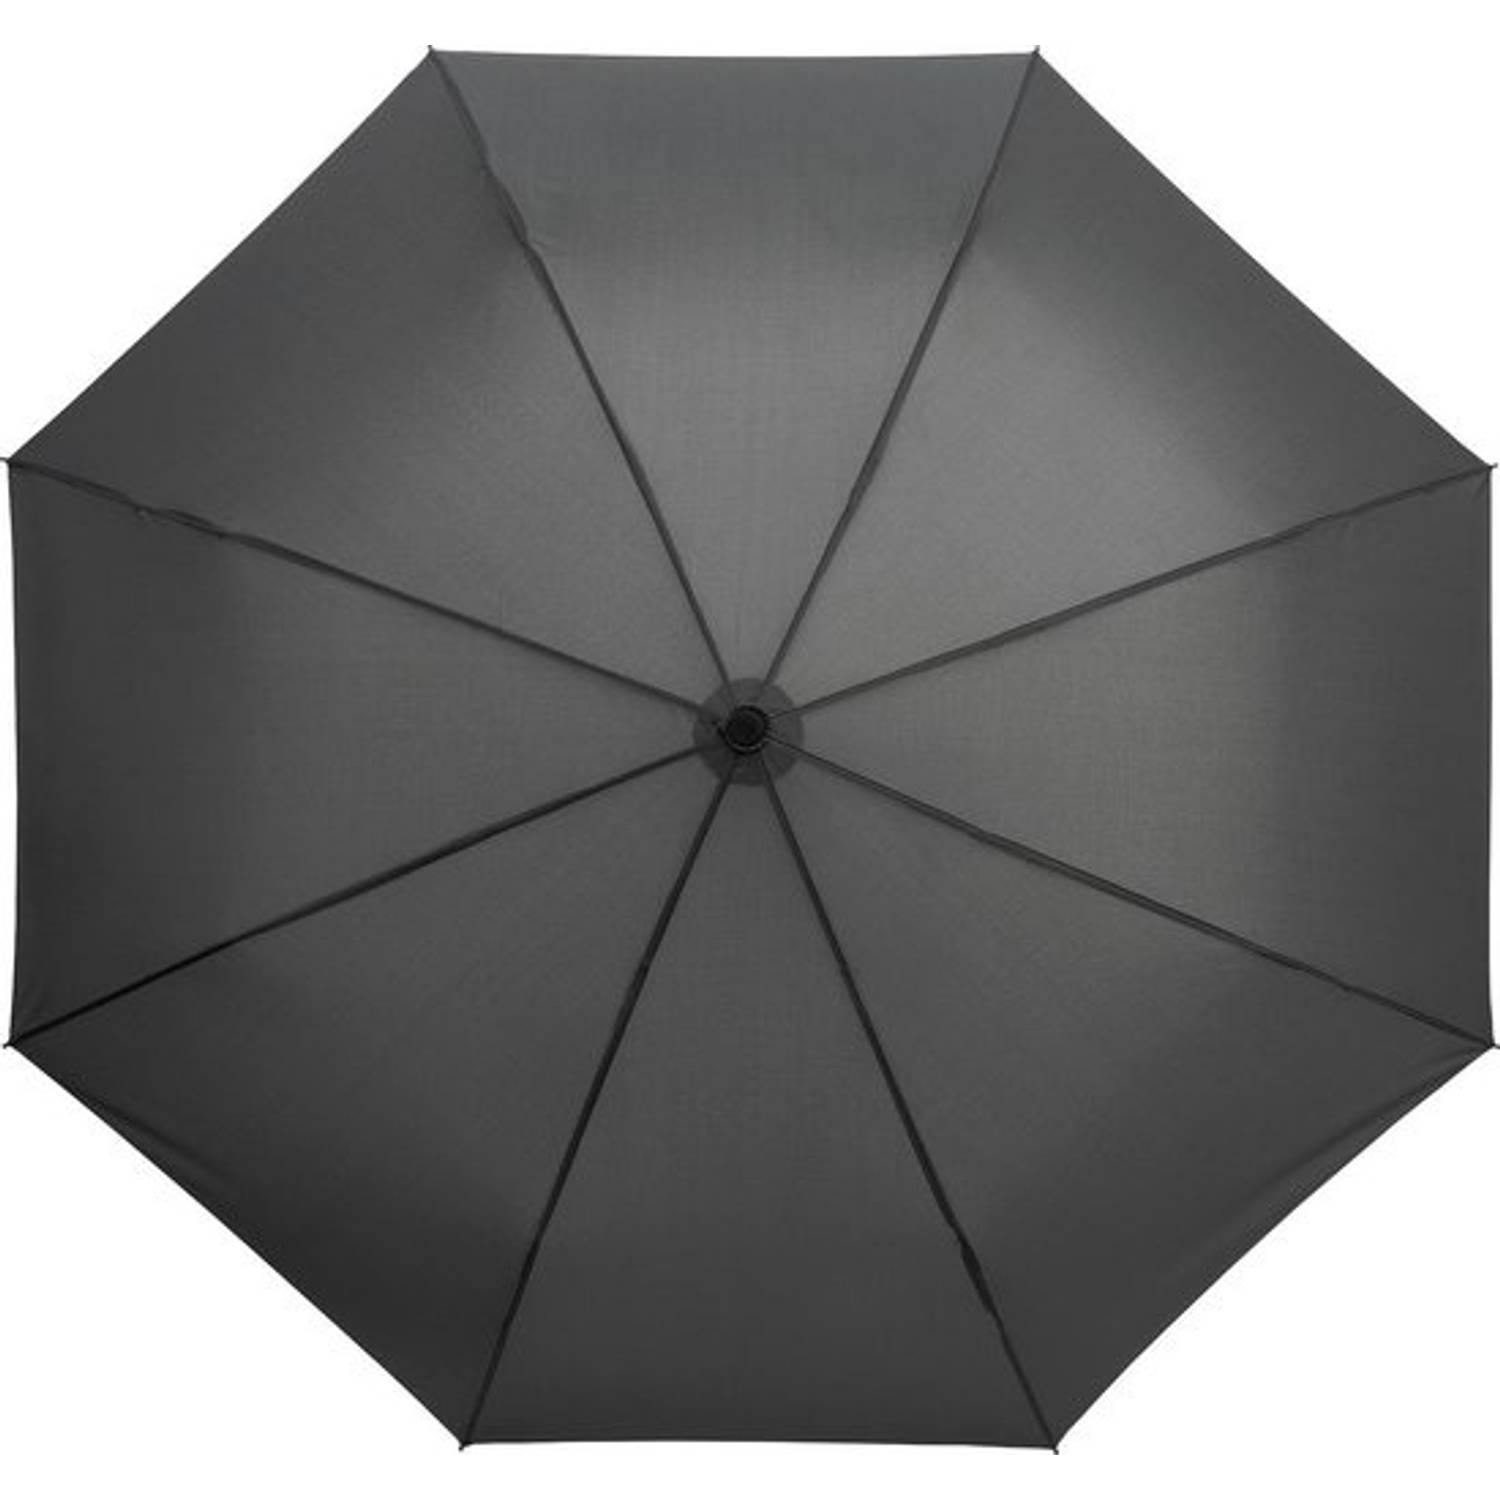 Specificiteit tevredenheid Ongewijzigd Opvouwbare paraplu, Stevig en Windproof - 2-delig metalen stok en frame -  rubber handvat Grijs | Blokker